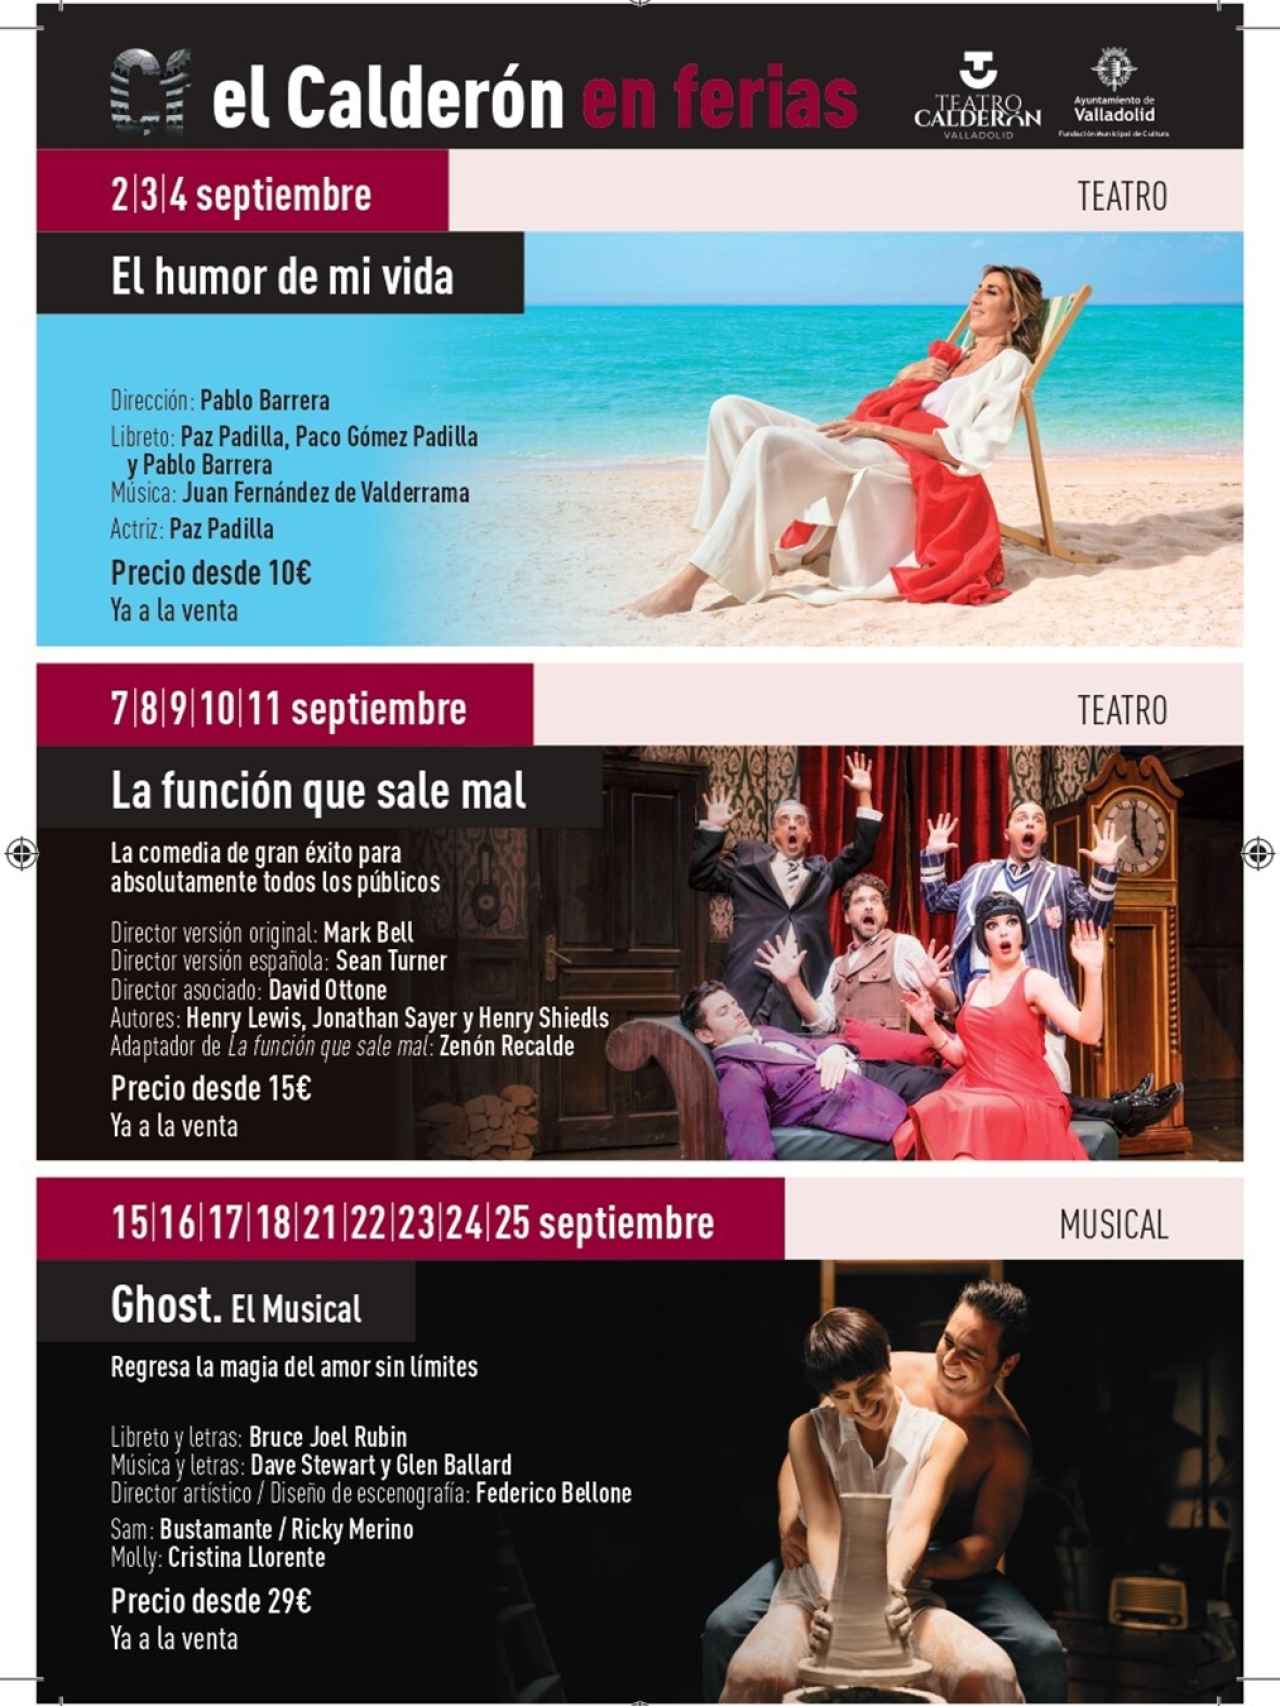 Oferta cultural del Teatro Calderón